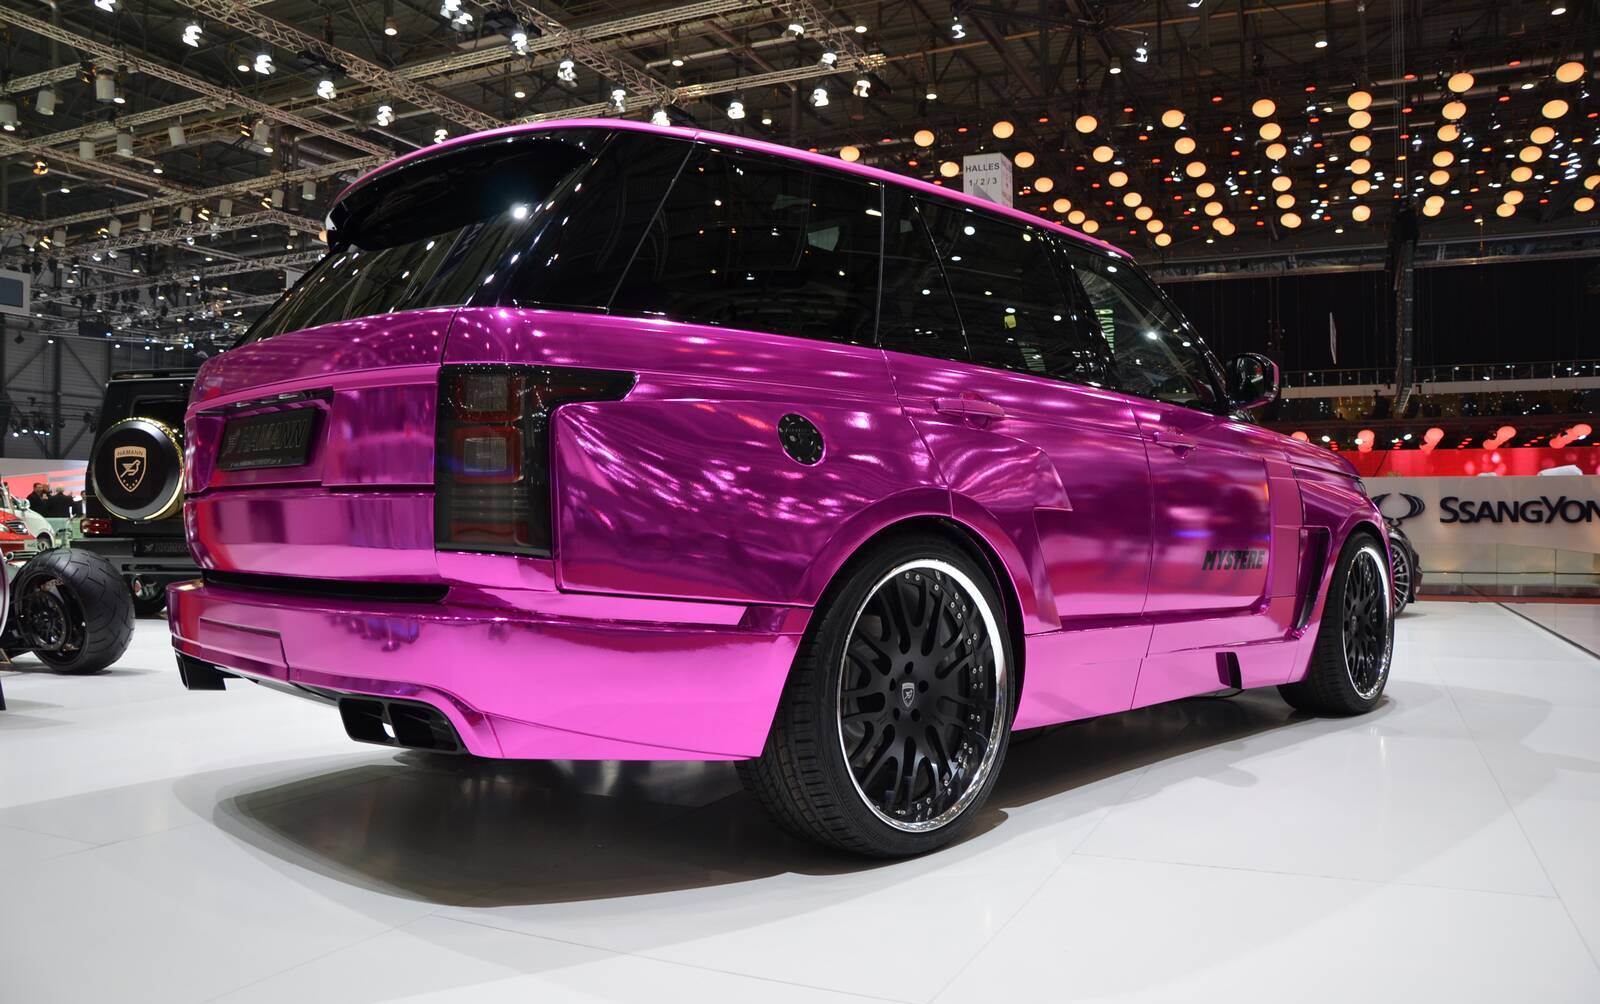 Hamann Mystere THE Pinkest Range Rover